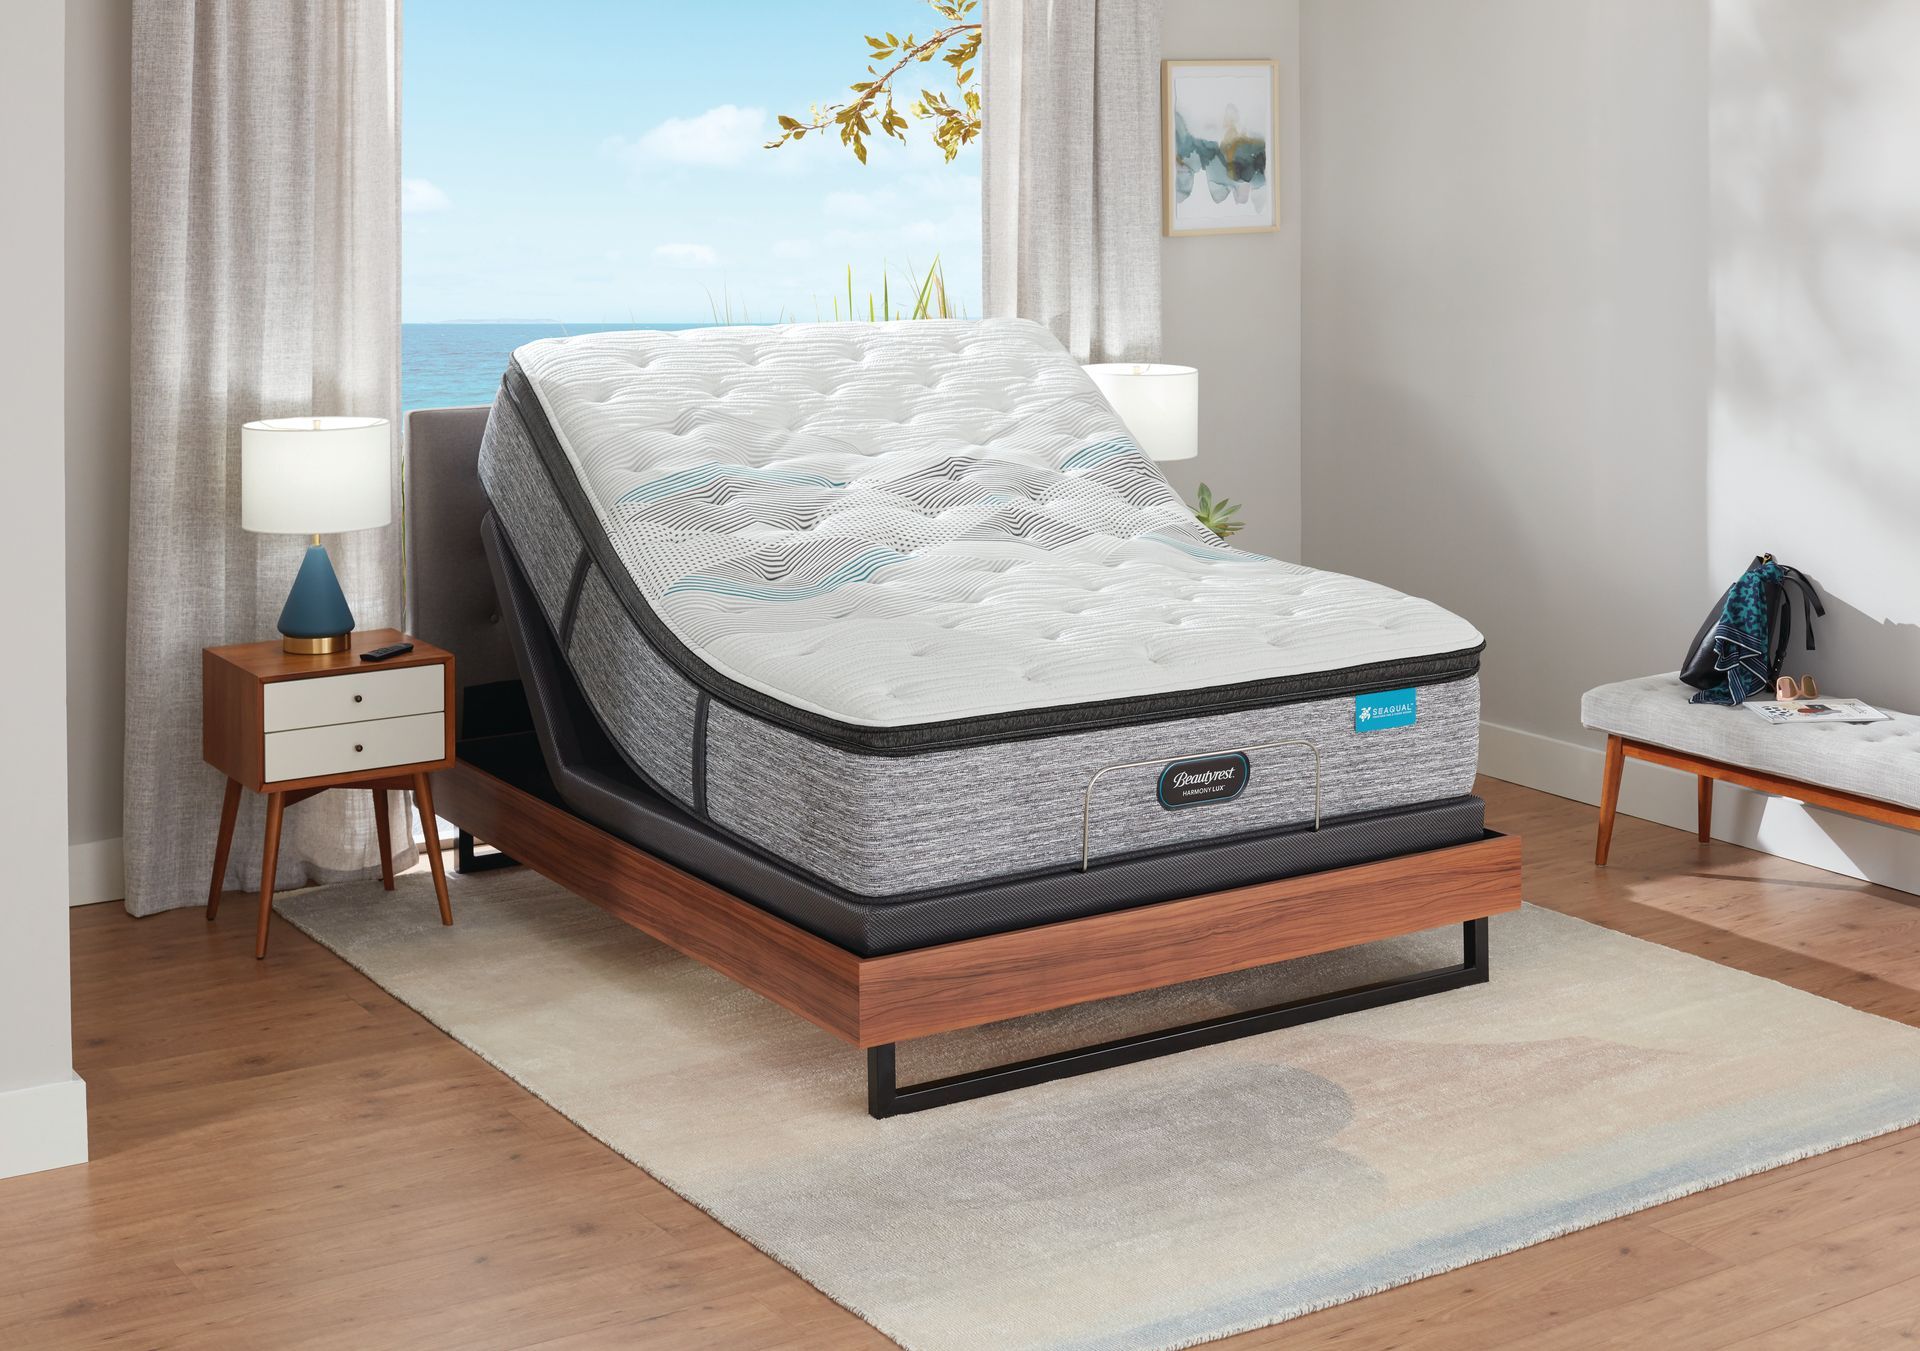 Una cama ajustable con un colchón encima en un dormitorio.